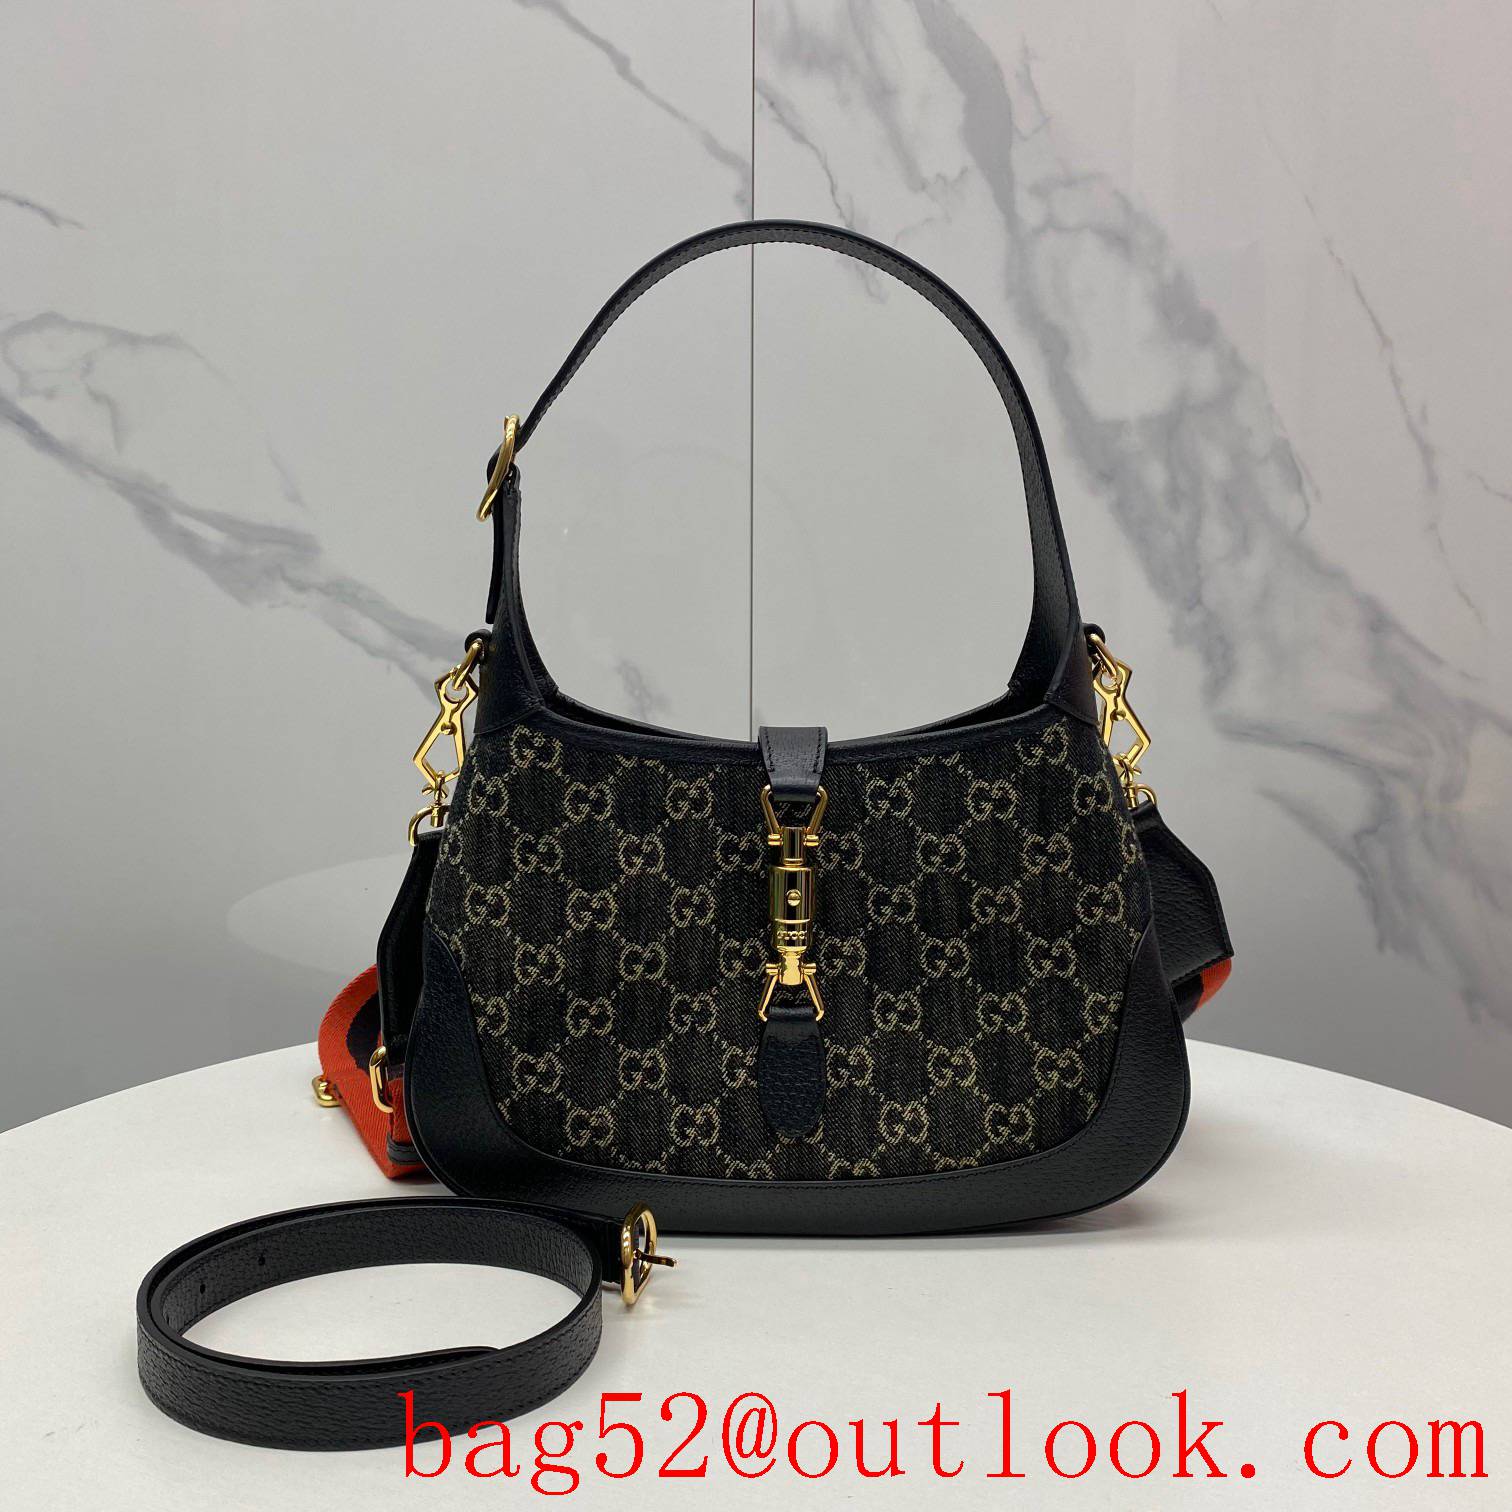 Gucci large space Black Denim width shoulder strap women's handbag